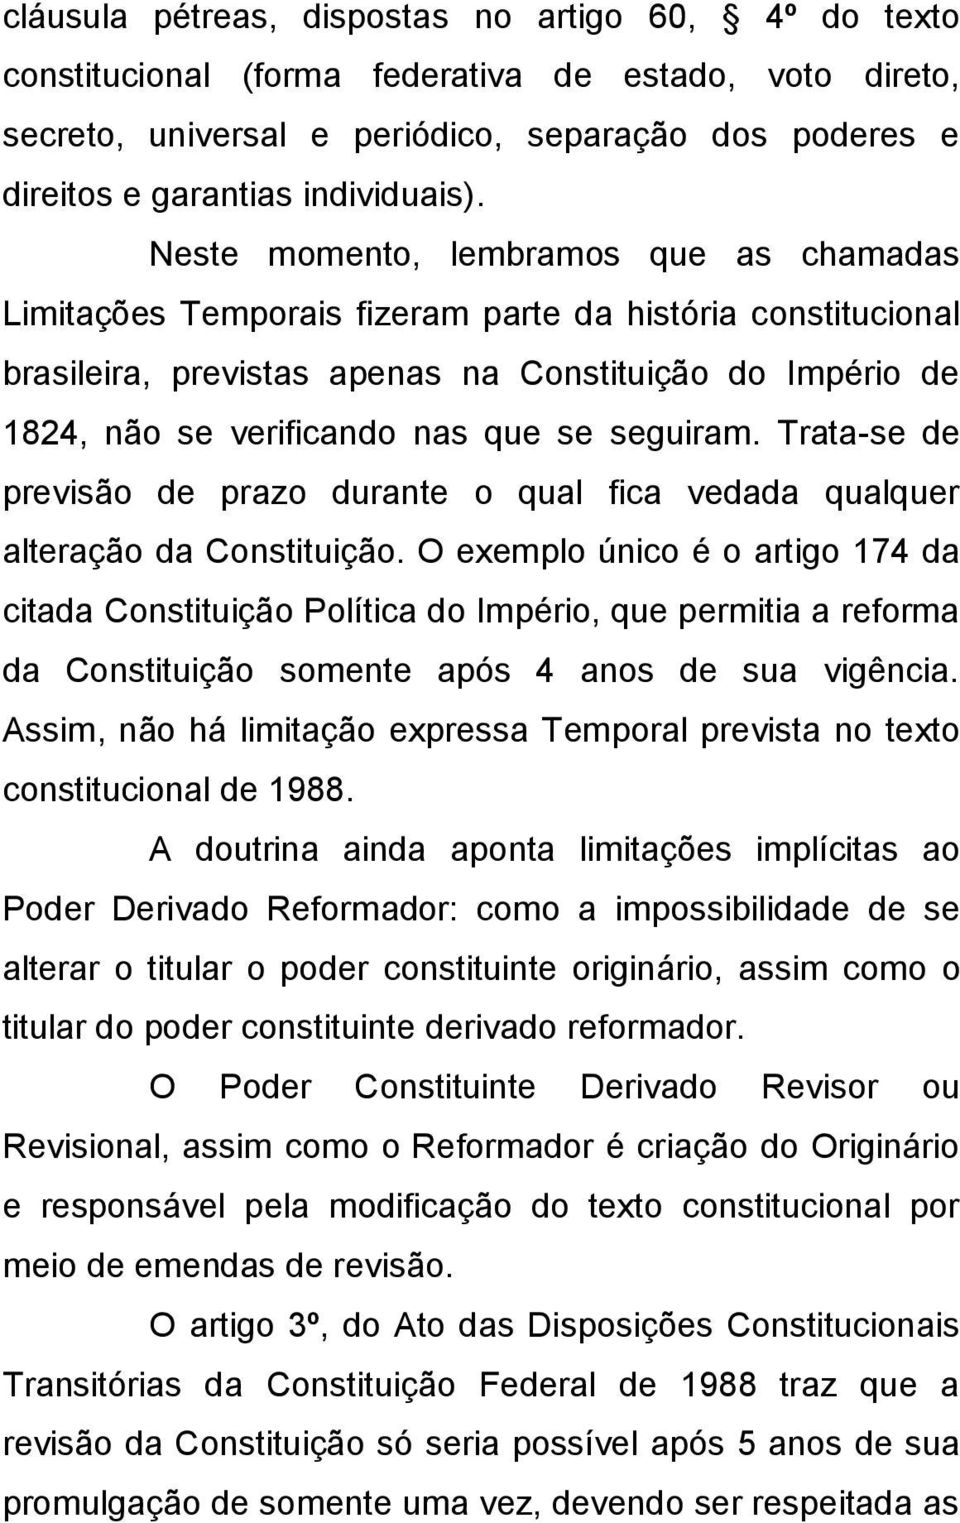 Neste momento, lembramos que as chamadas Limitações Temporais fizeram parte da história constitucional brasileira, previstas apenas na Constituição do Império de 1824, não se verificando nas que se